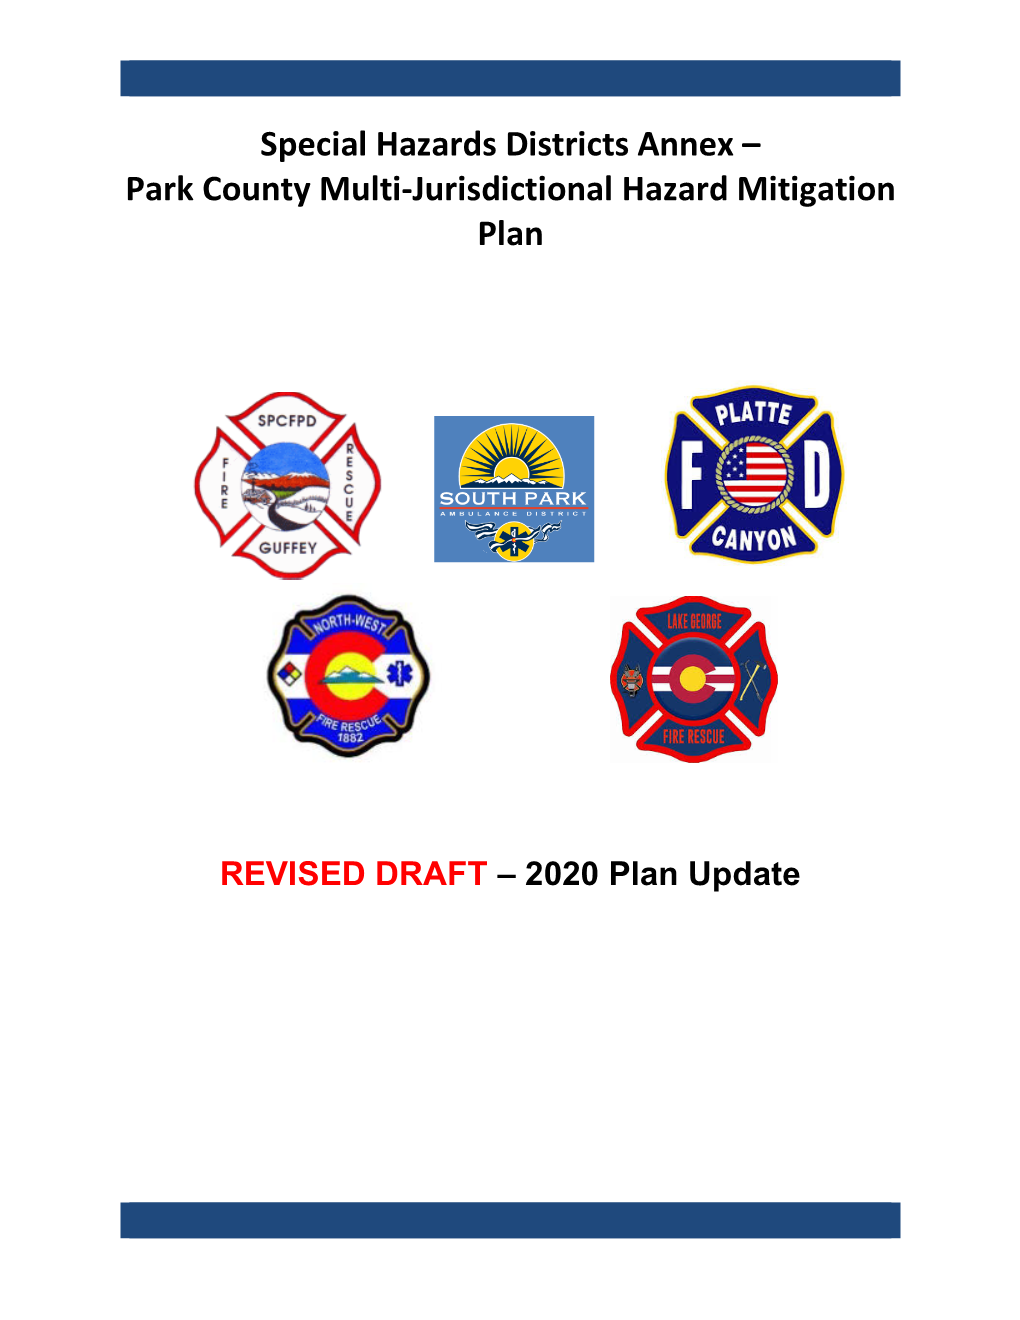 Special Hazards Districts Annex – Park County Multi-Jurisdictional Hazard Mitigation Plan